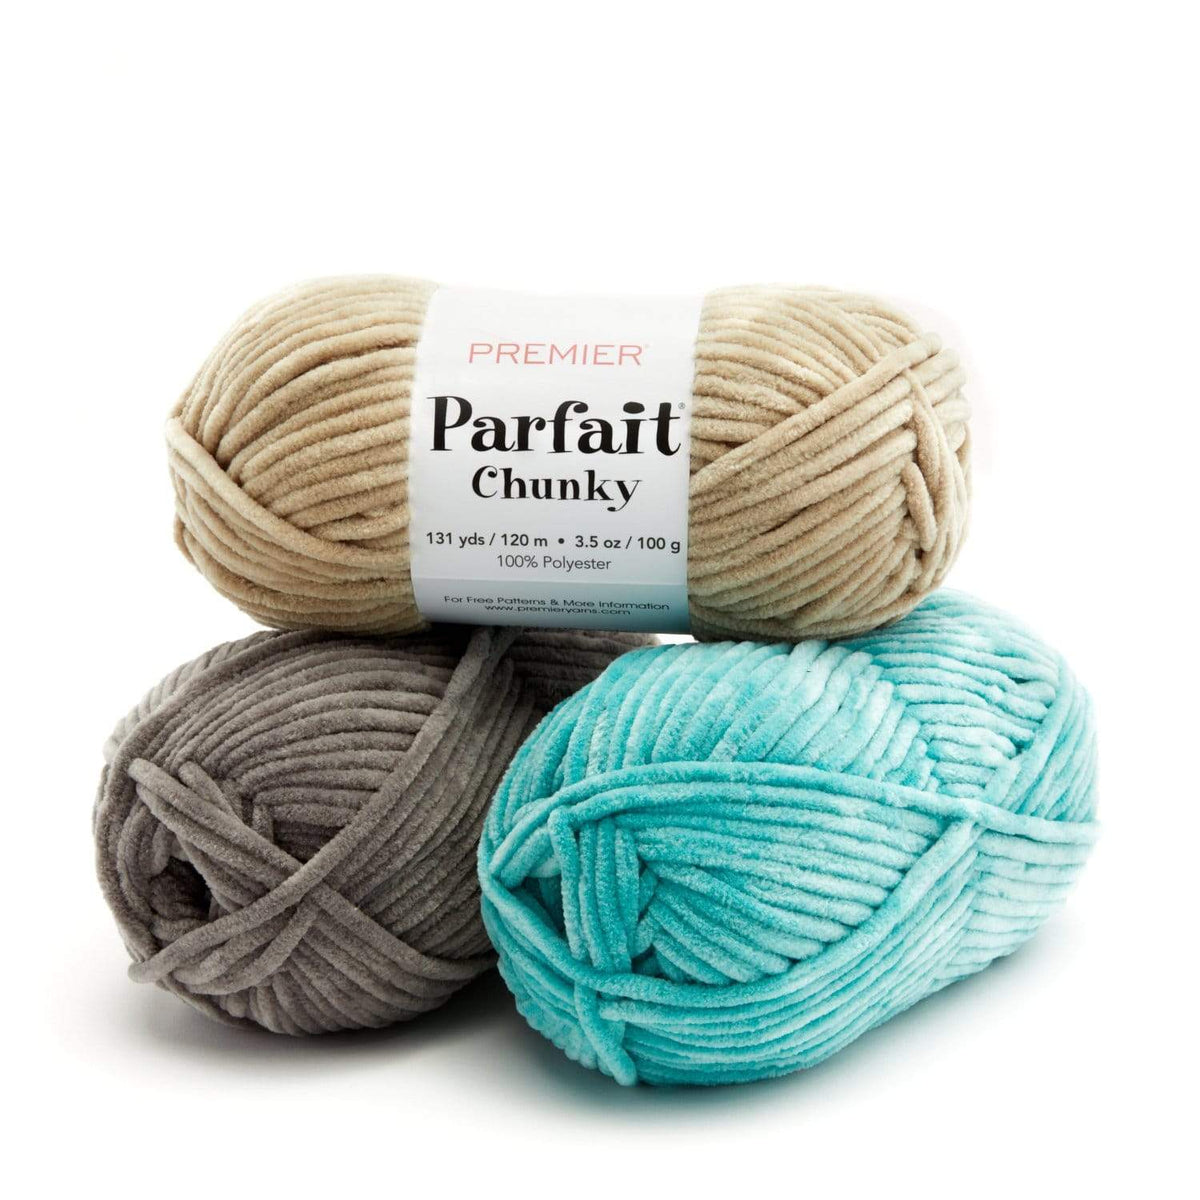 Premier Yarns - #WIPWednesday with our new yarn Premier Parfait